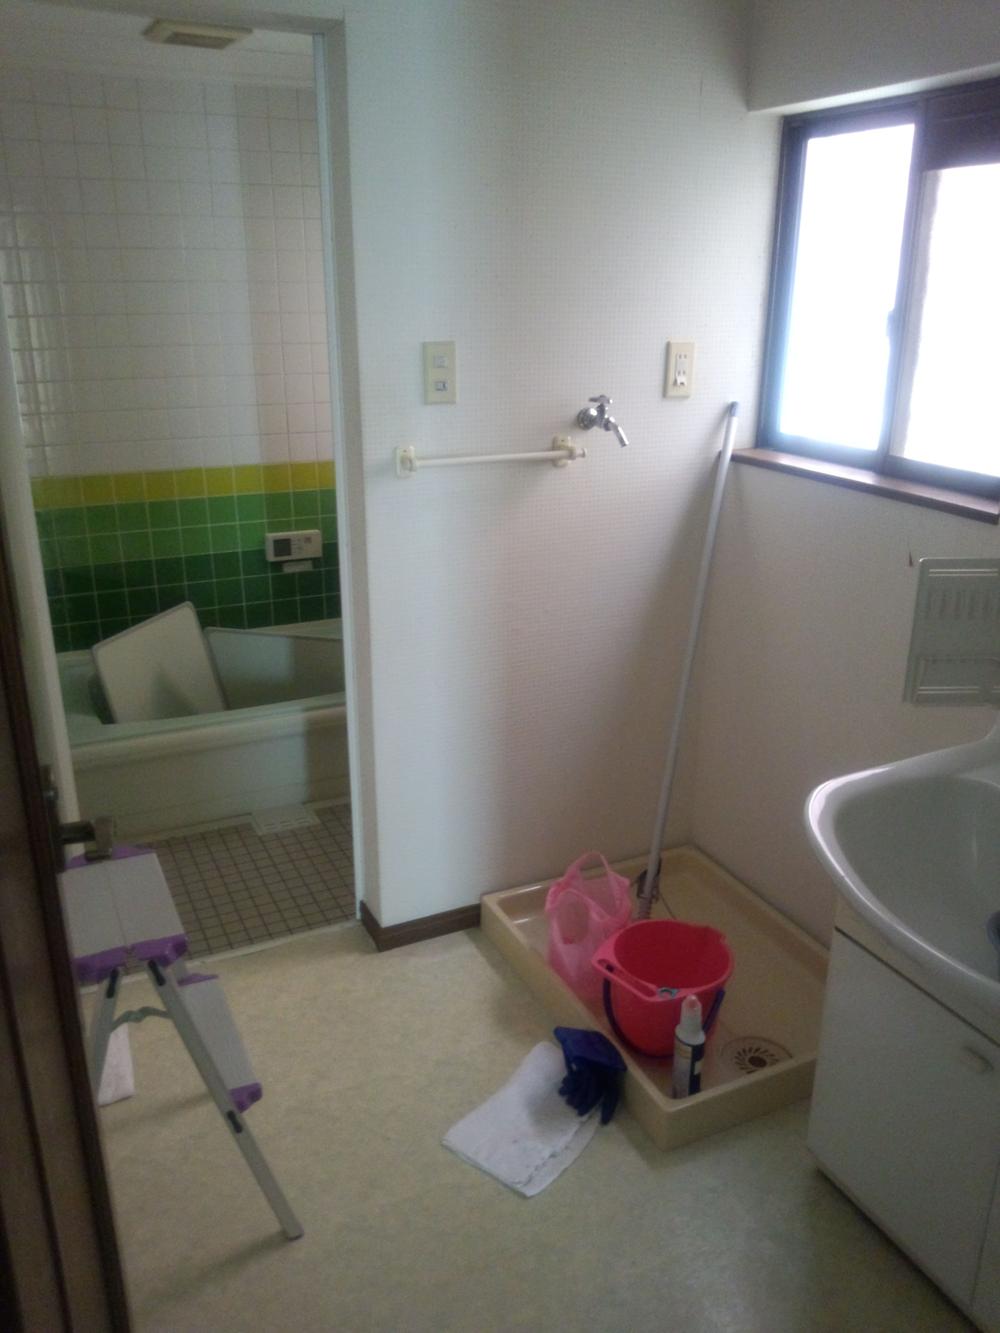 Bathroom. Room (May 2012) shooting